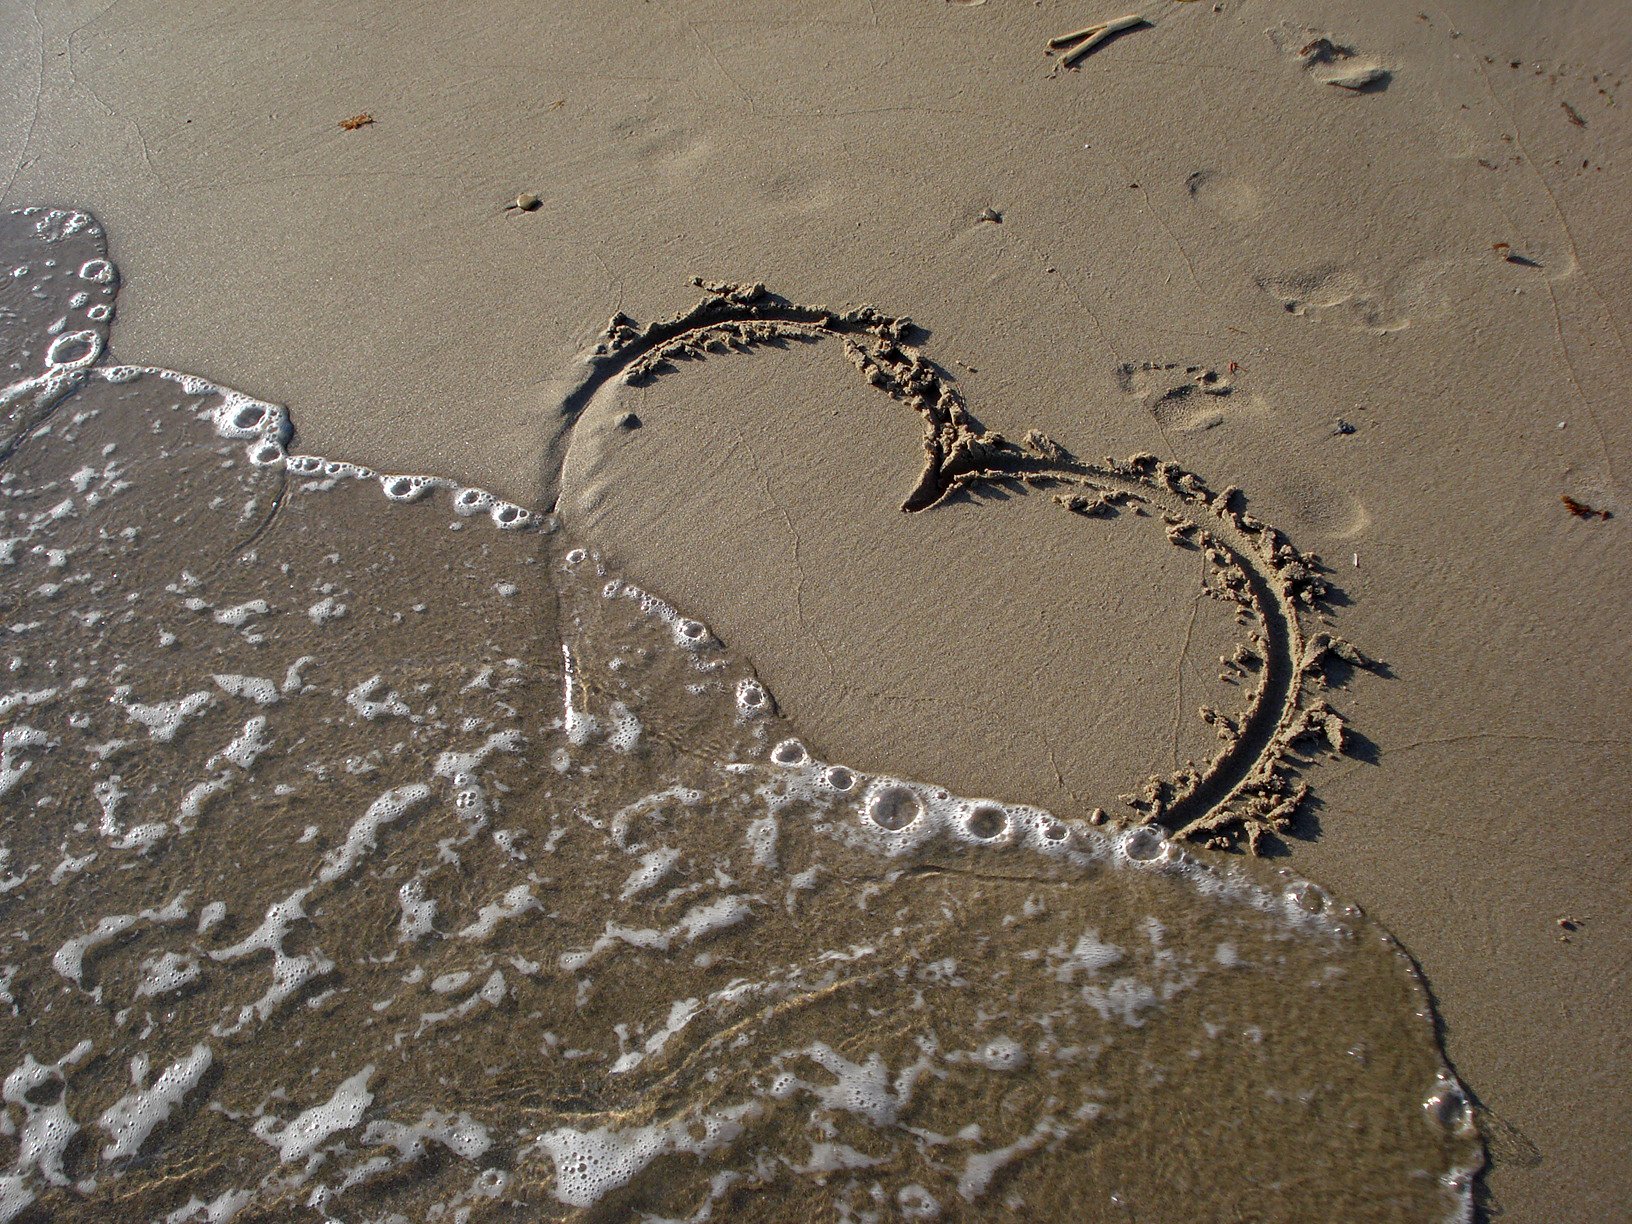 Сердечко на песке. Следы на песке. Сердечко нарисованное на песке. Следы на песке у моря. След на воде текст